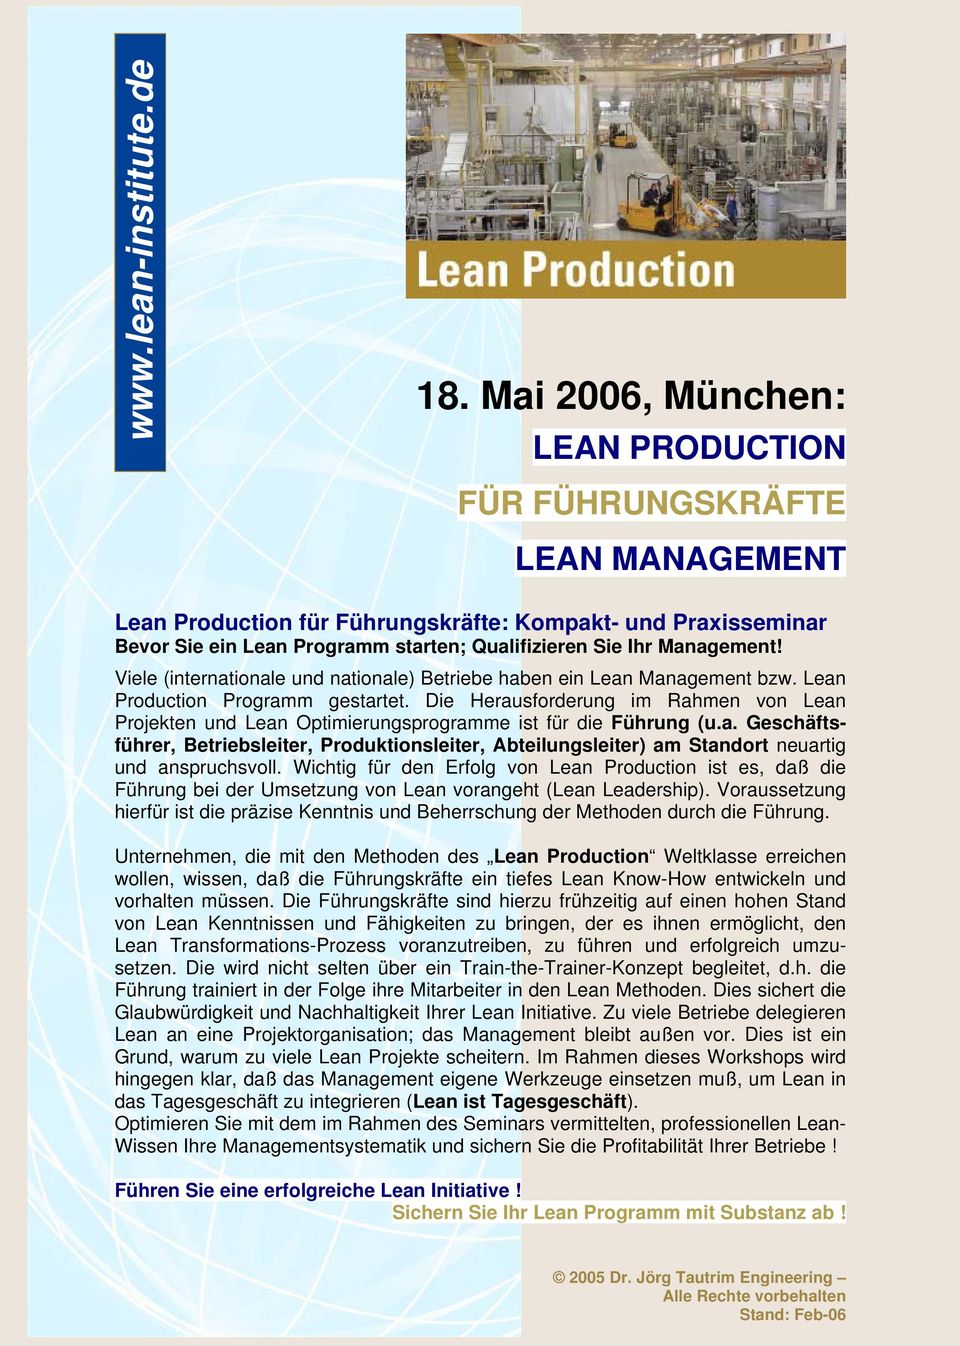 Management! Viele (internationale und nationale) Betriebe haben ein Lean Management bzw. Lean Production Programm gestartet.